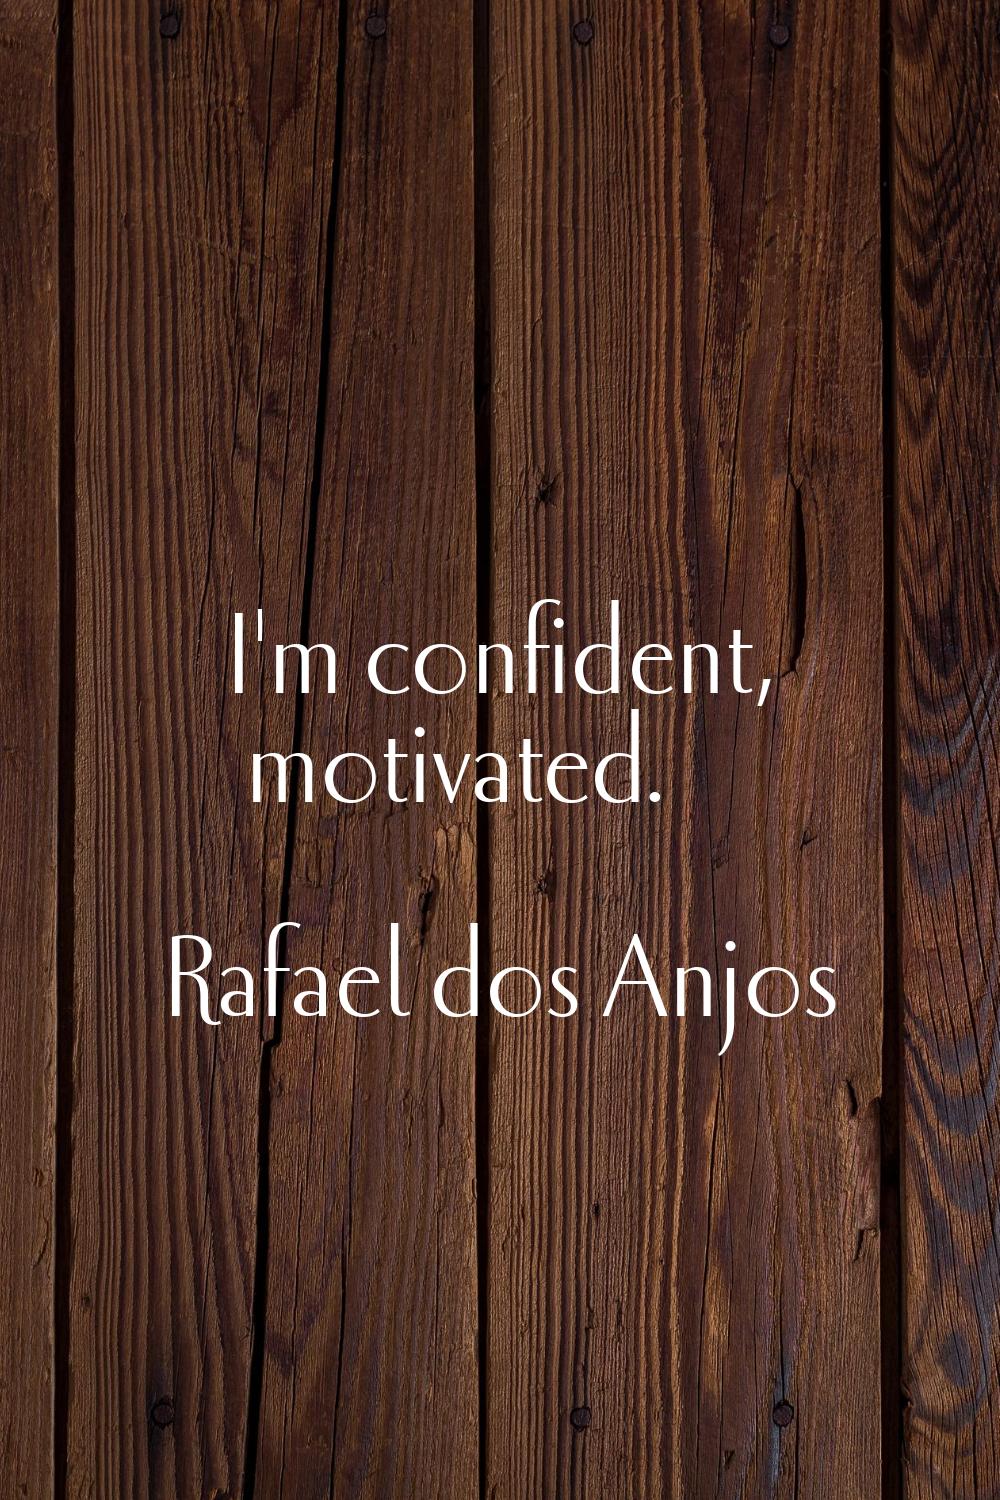 I'm confident, motivated.